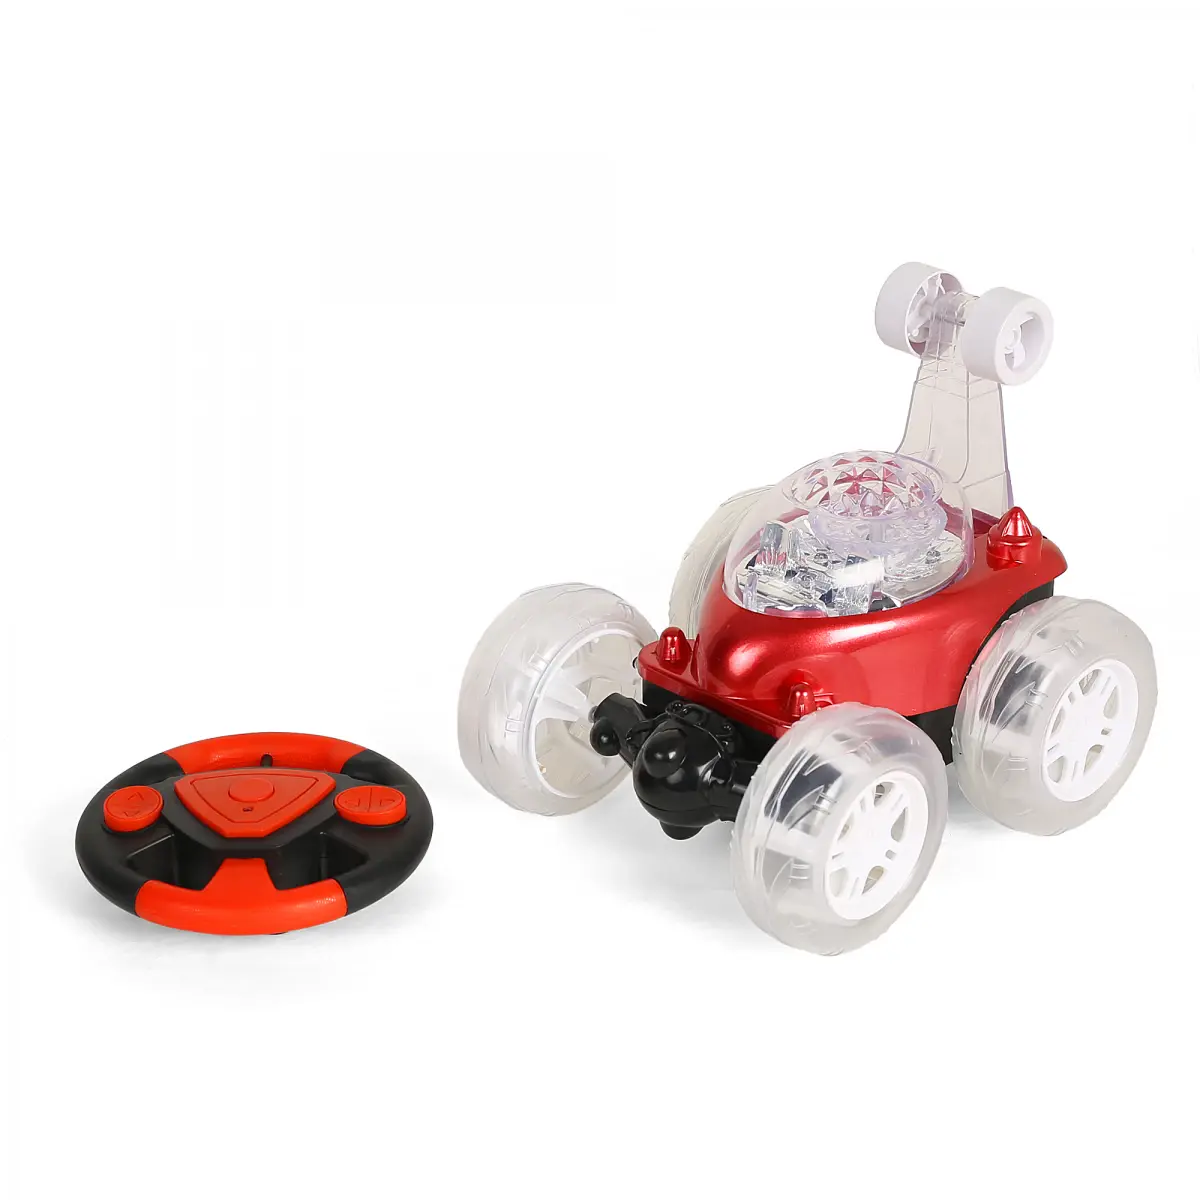 Ralleyz Rustler Flip Into All Stunt Racing Action, Remote Control Toys, 4Y+, Red